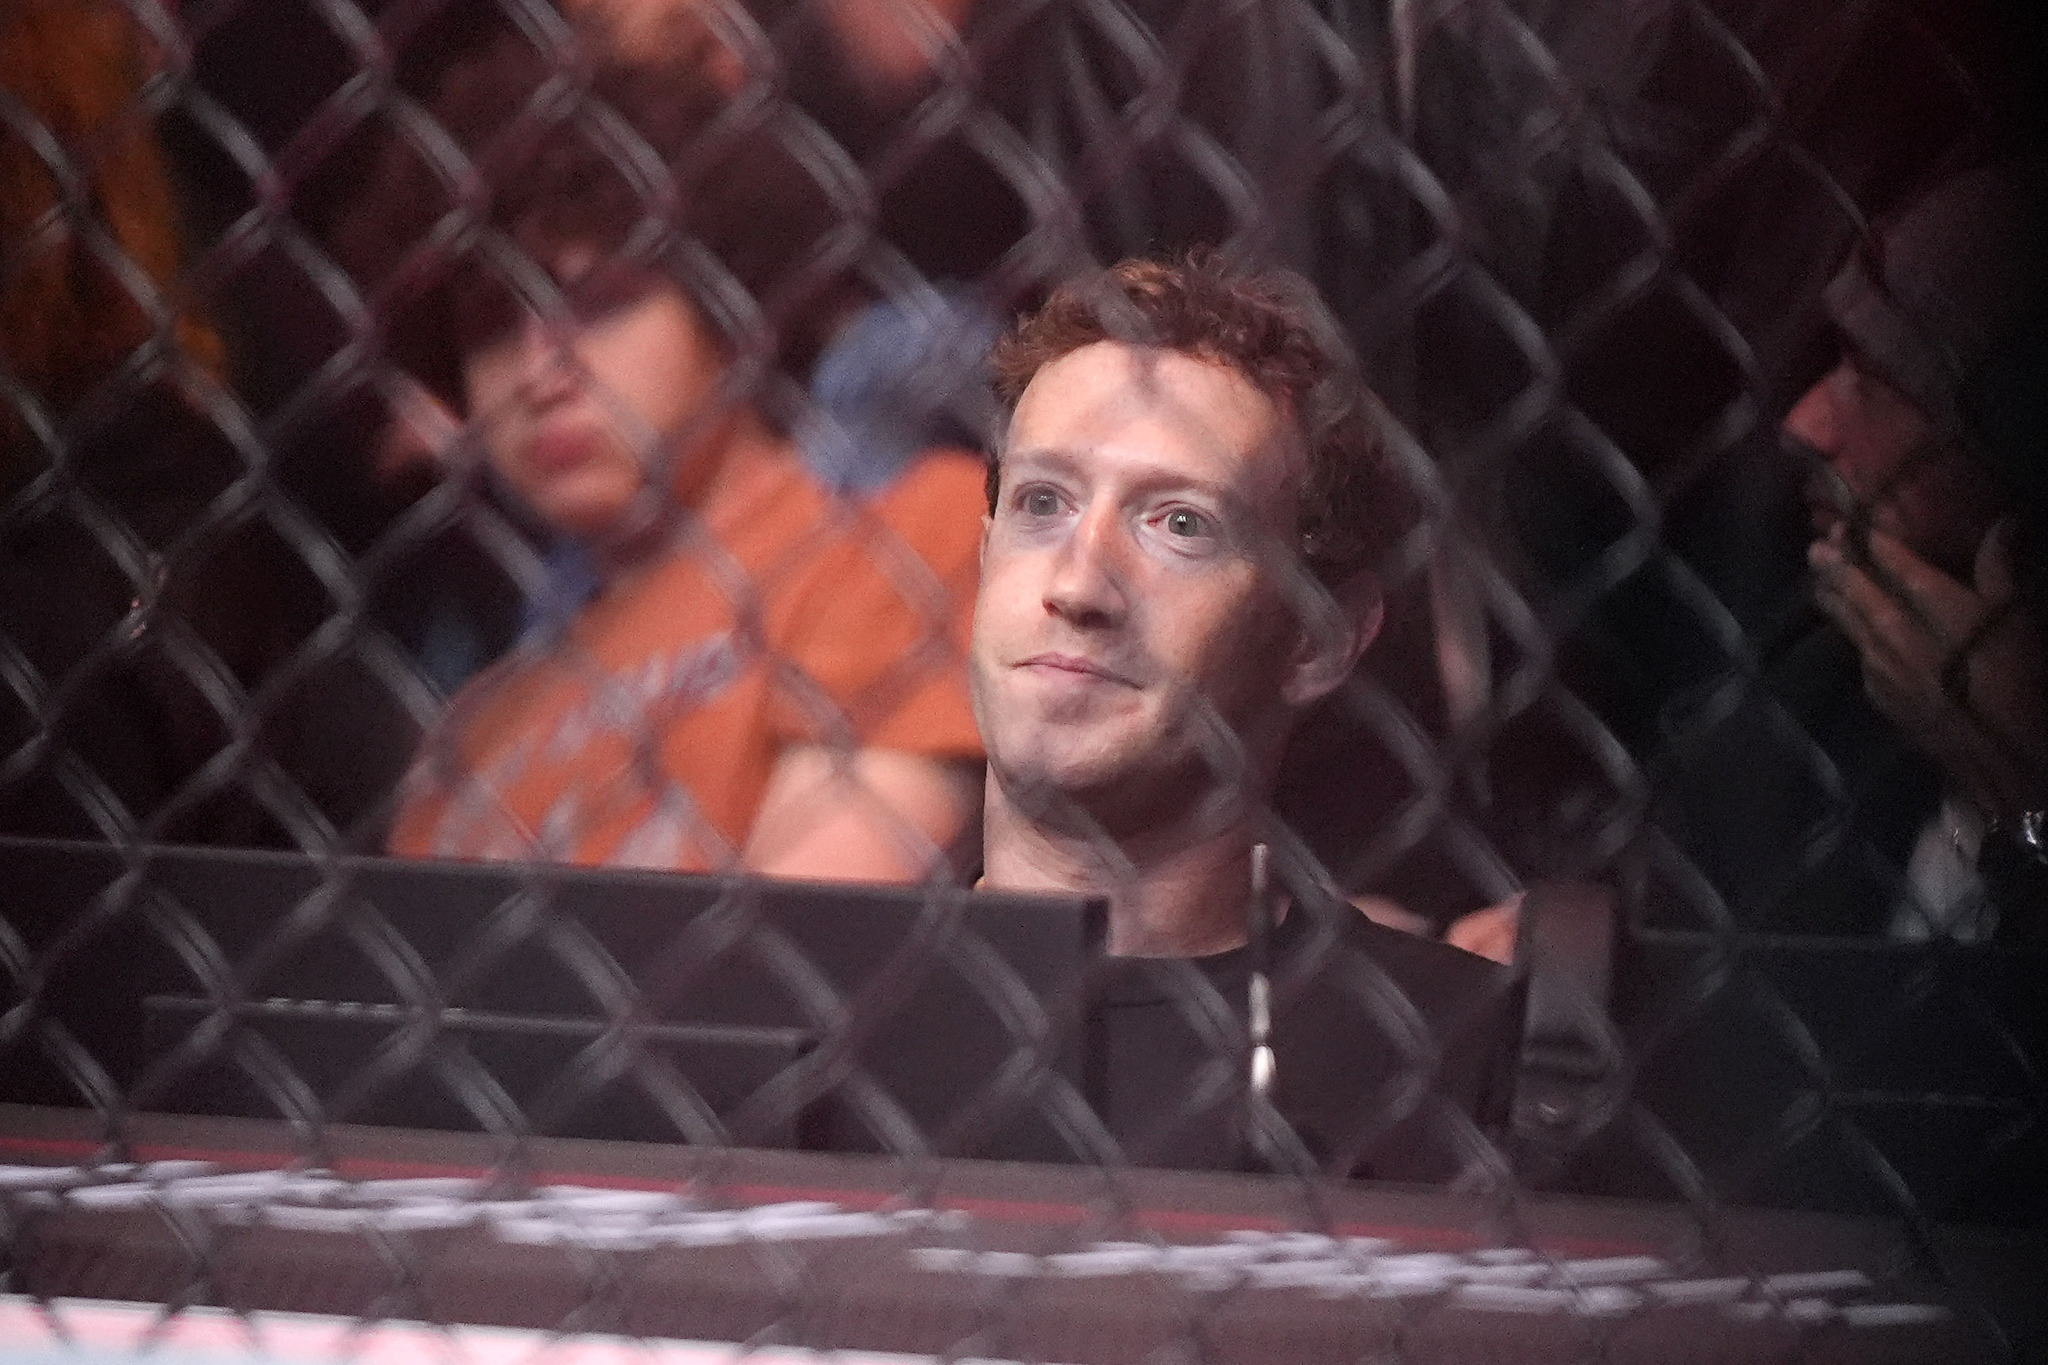 Mark Zuckerberg looks awkward as part of UFC 298 event